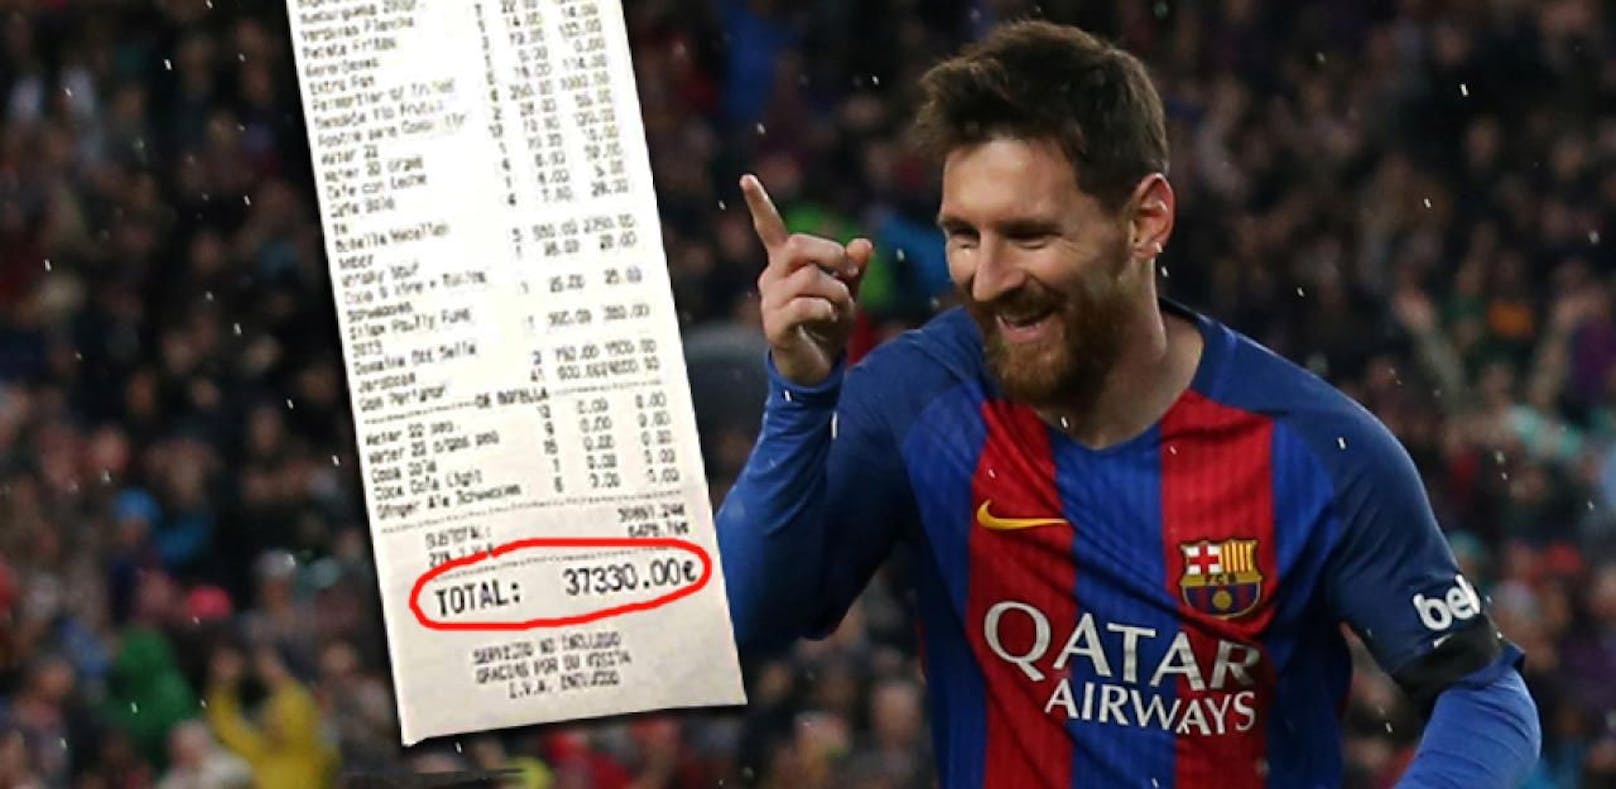 Die Wahnsinns-Rechnung der Party von Lionel Messi auf Ibiza.